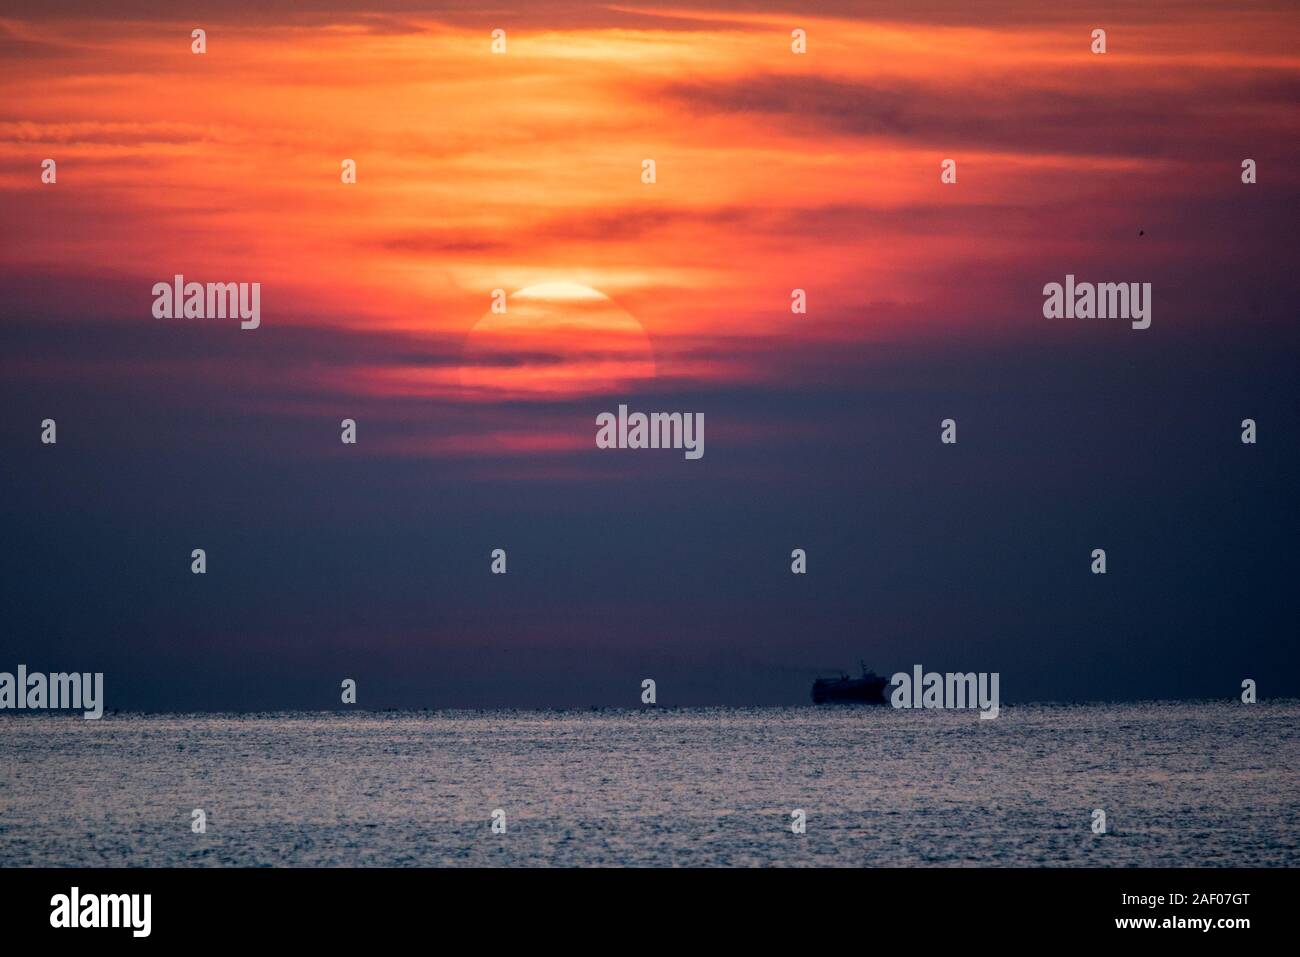 Sonnenuntergang Szene am Meer. Dramatische Roter Himmel über der Silhouette eines Schiffes in ruhigen Meer. Stockfoto